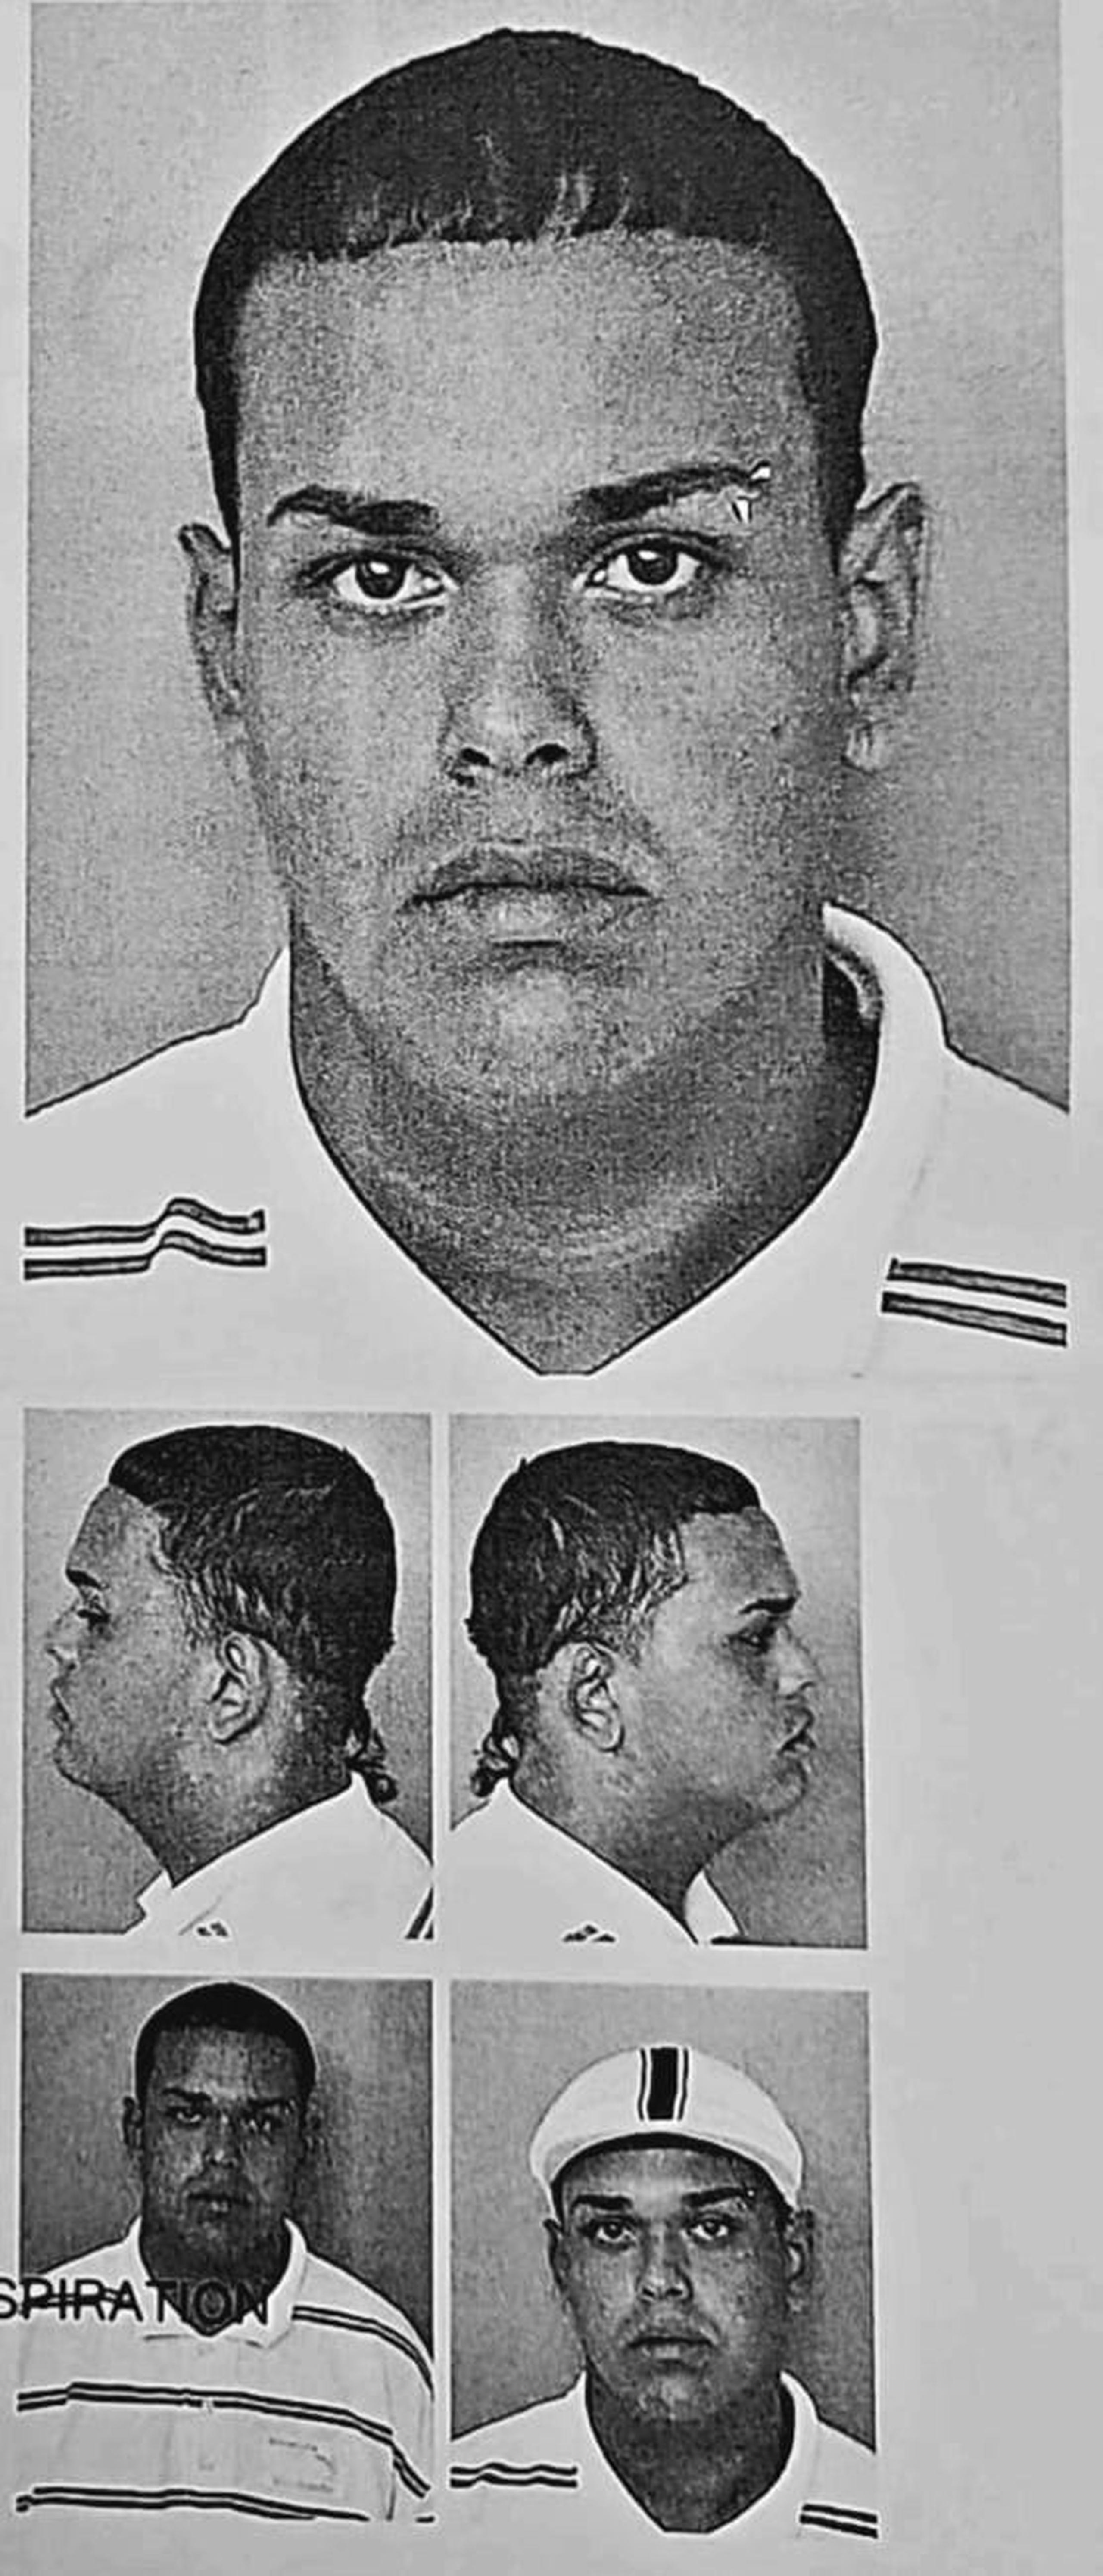 José J. López Pellot enfrentará cargos por el hurto de un vehículo tras evadirse de un centro federal en el que cumplía probatoria por "carjacking".